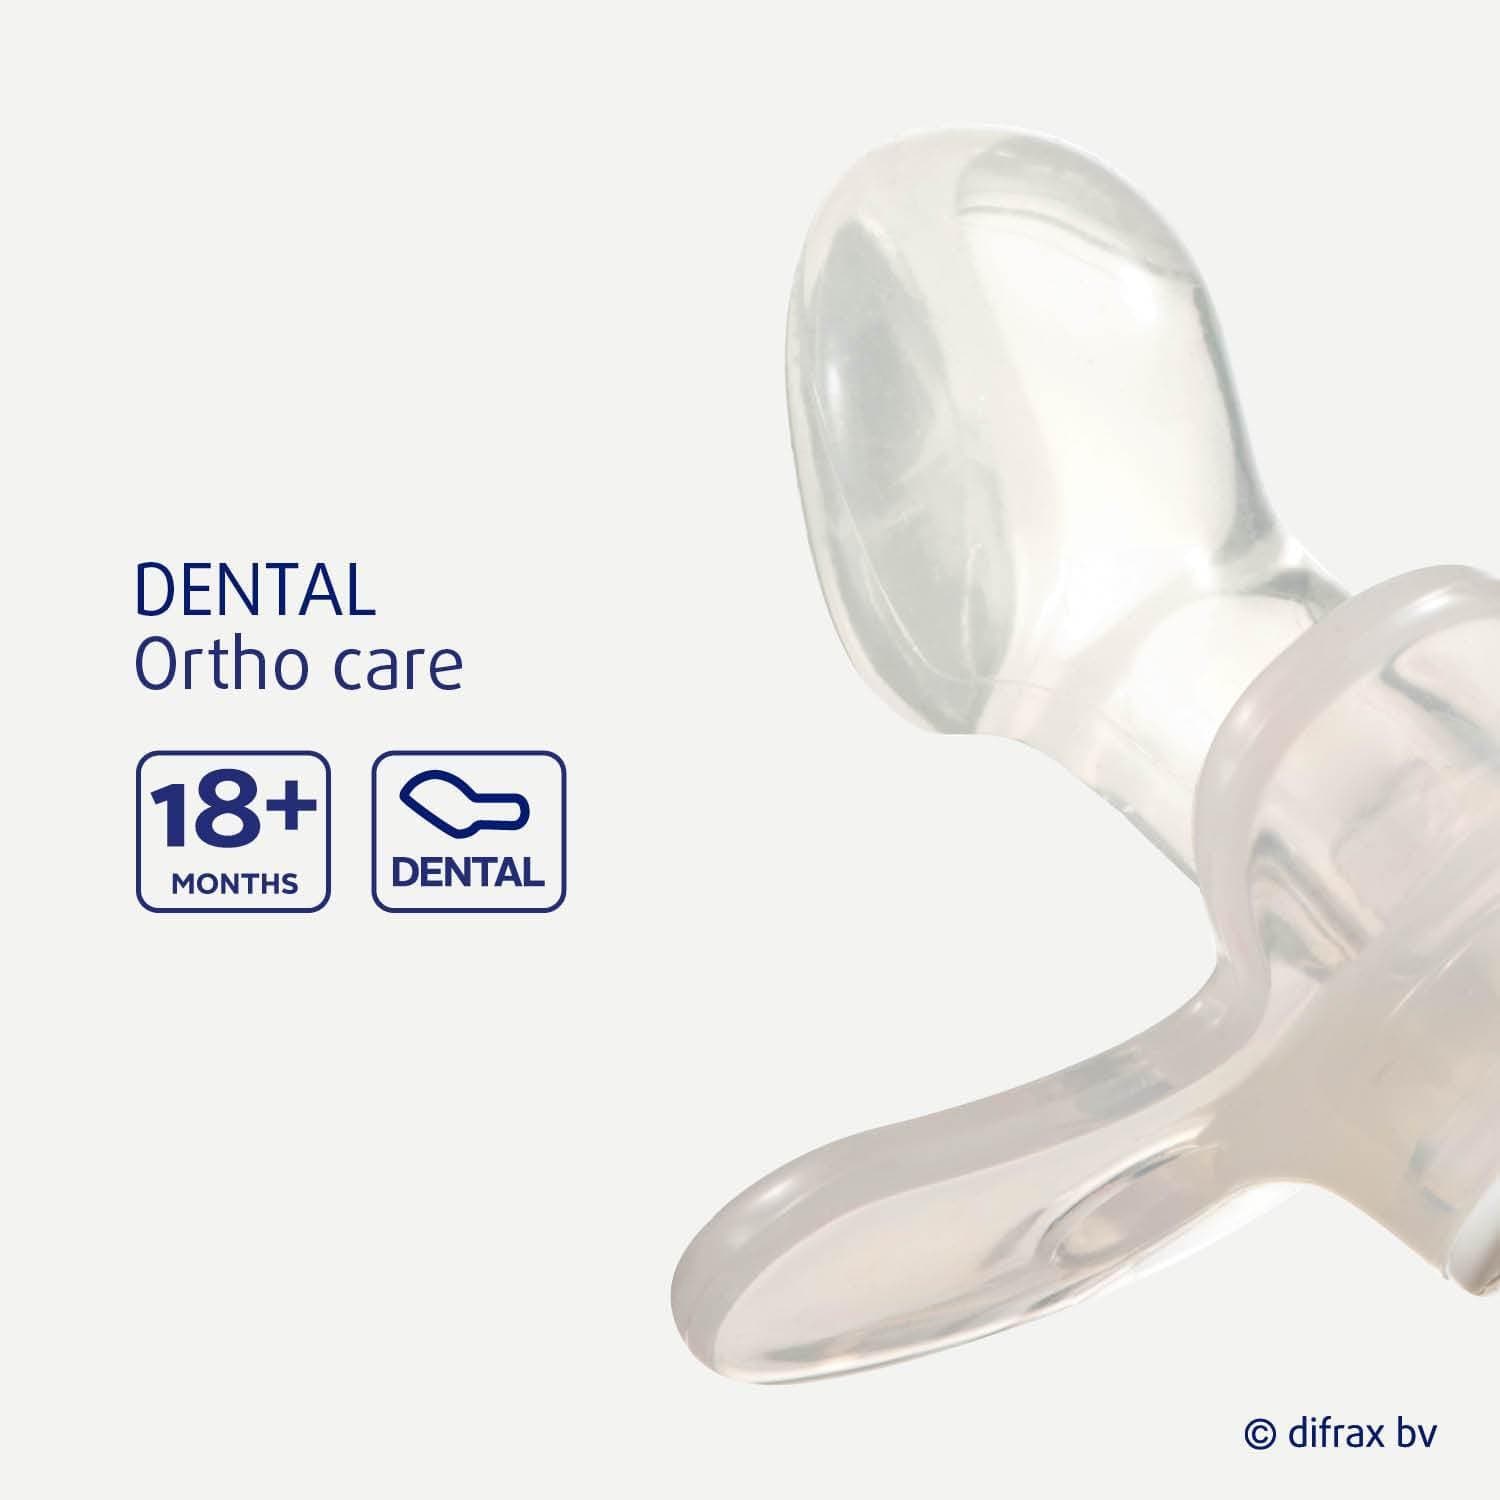 Sucette Difrax dental +18 mois DIFRAX : Comparateur, Avis, Prix